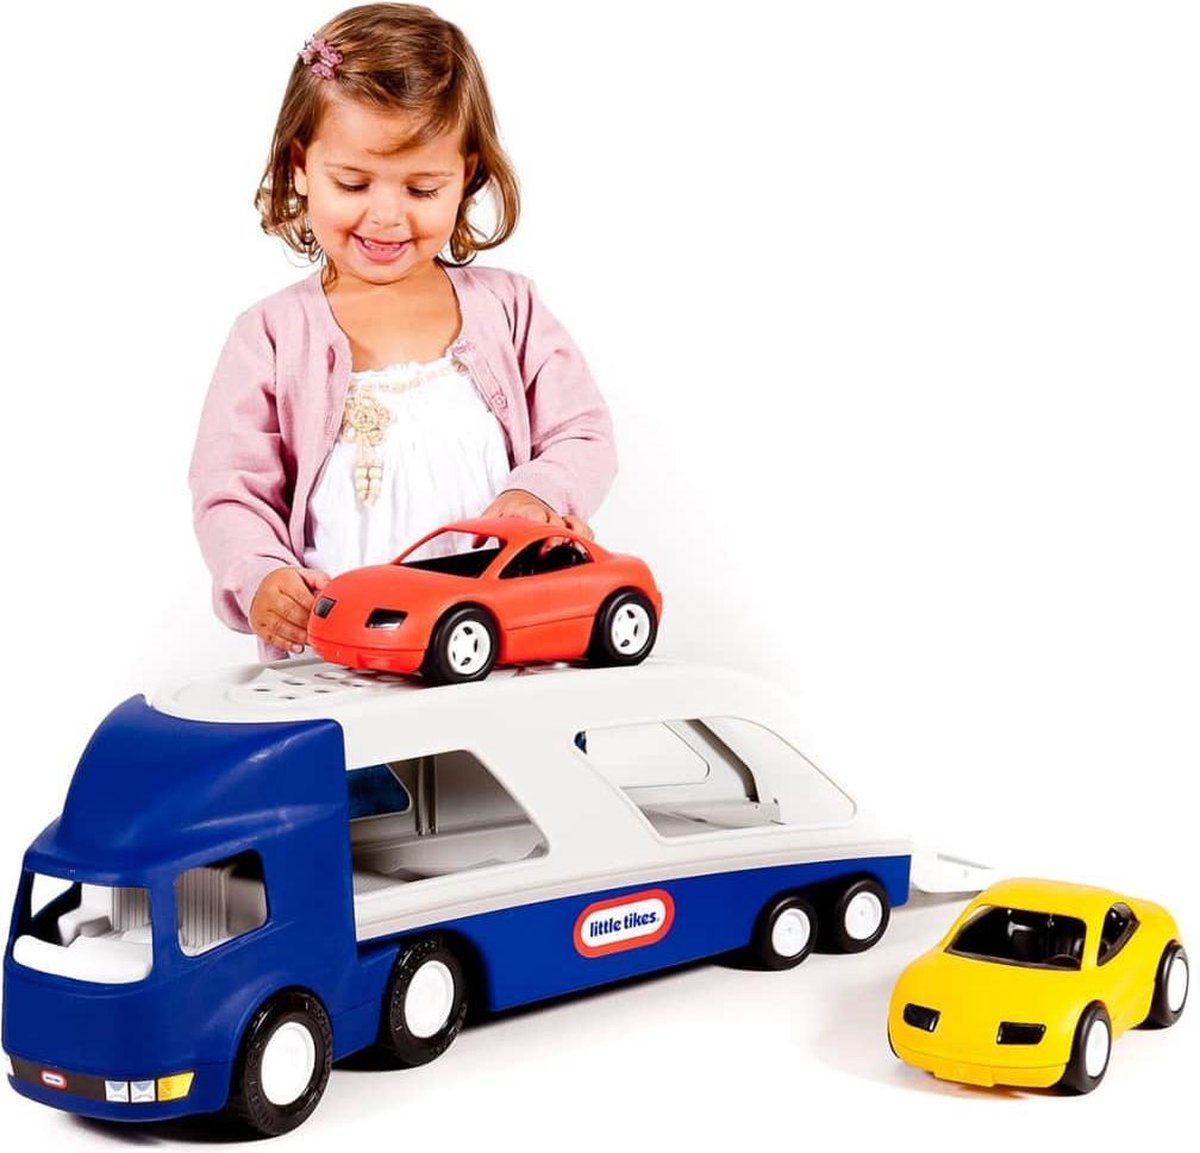 vorm beschaving voldoende Little Tikes Grote Auto Transporter - Speelgoedvoertuig | bol.com